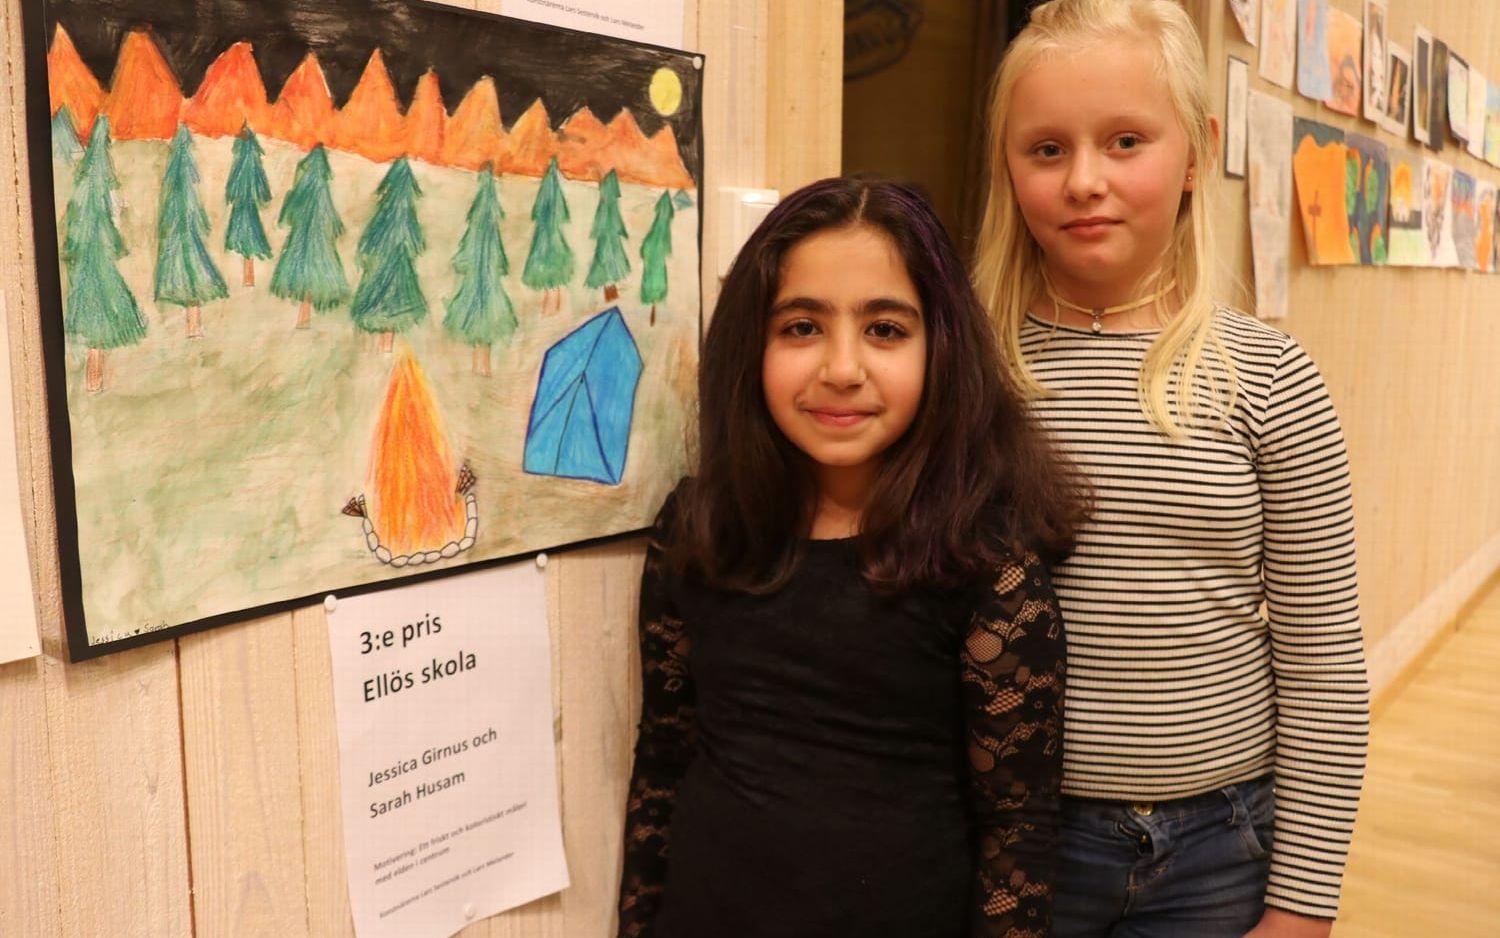 Jessica Girnius och Sarah Husan från Ellös hade tillsammans målat och det gav klassen ett tredjepris. Foto Erika Olofsson